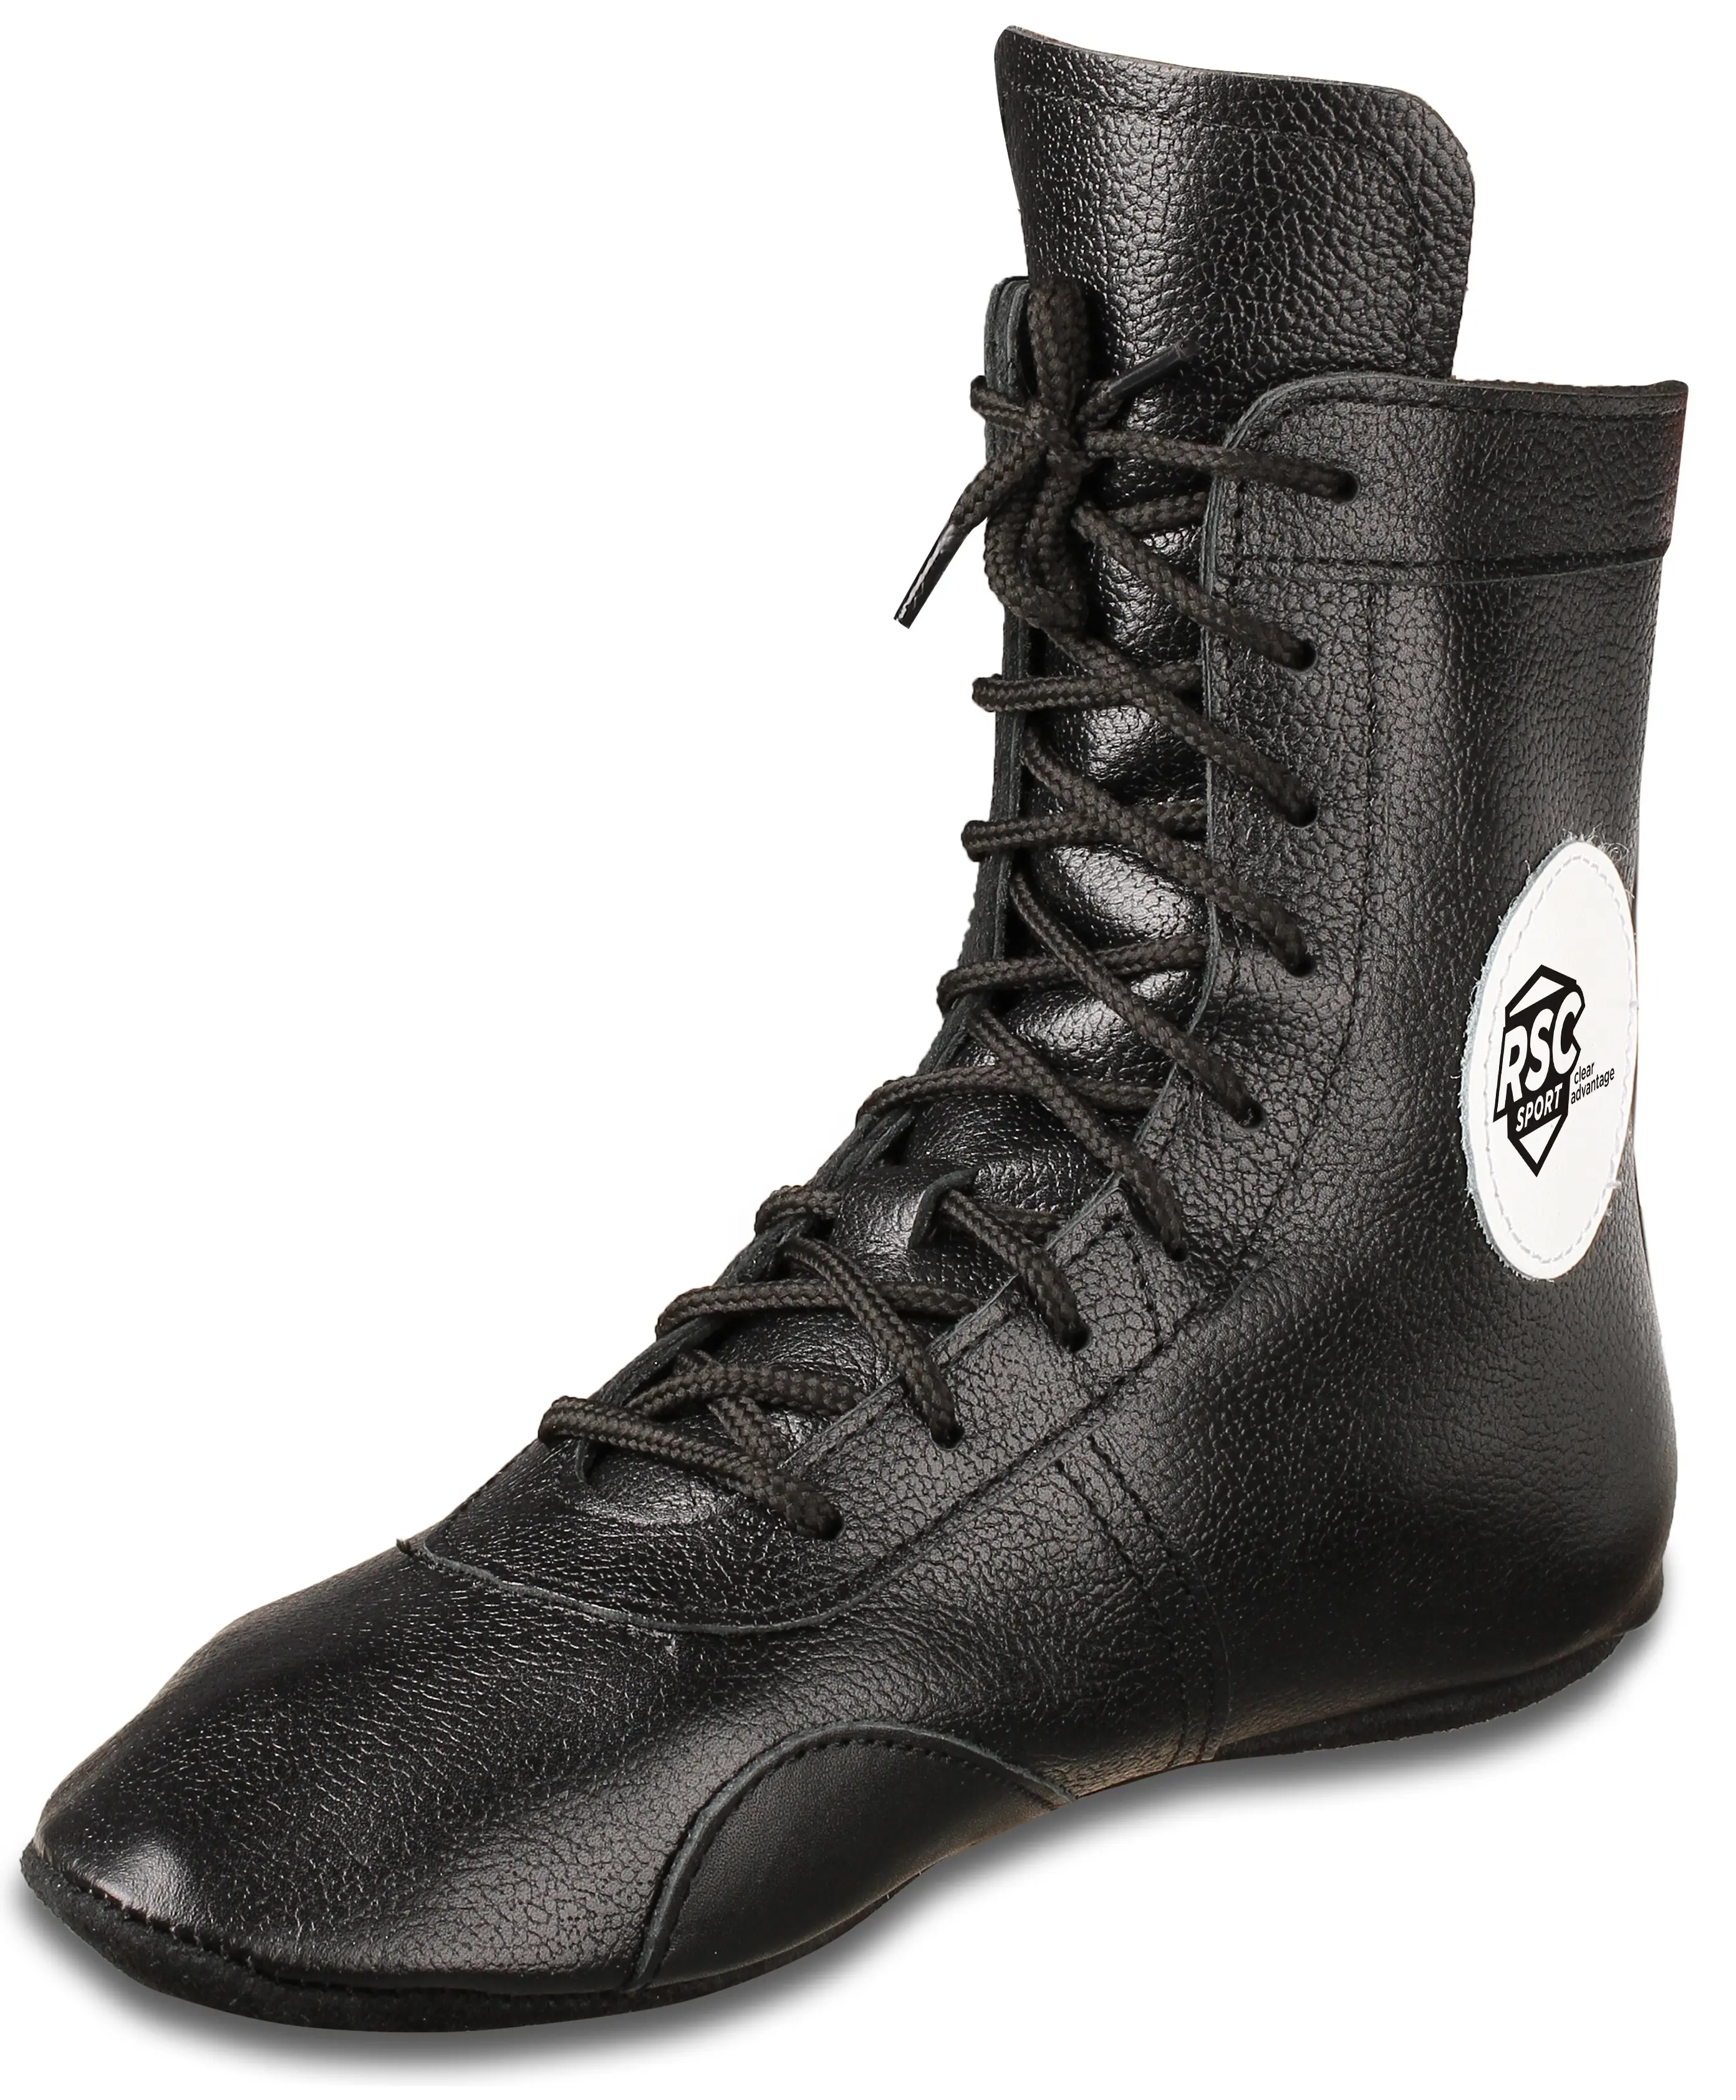 Обувь для борьбы (борцовки) RSC GS106 черный